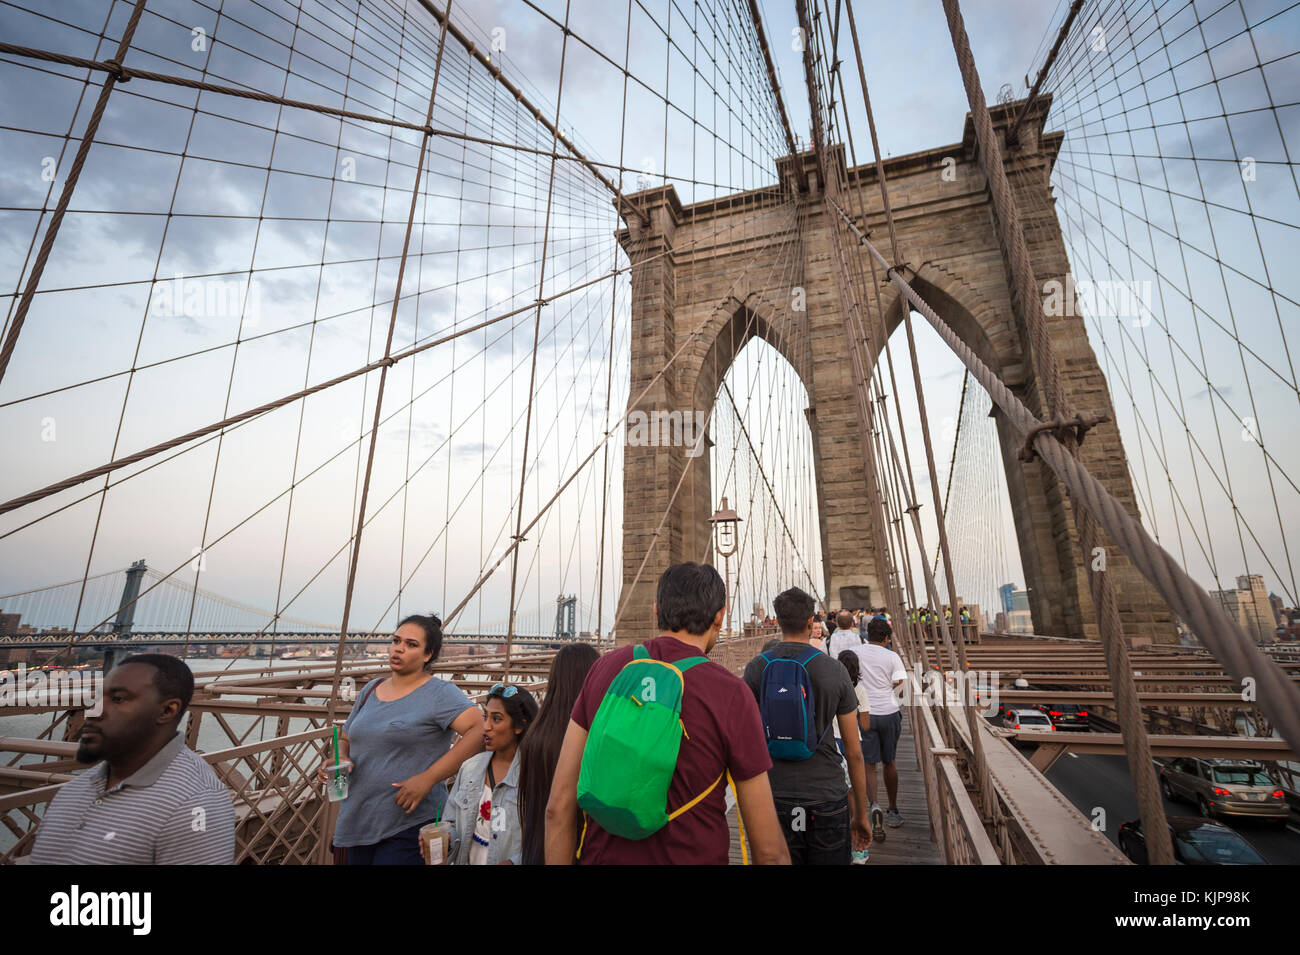 New york - agosto 26, 2017: i turisti e la gente del posto la lotta per lo spazio sulla affollata strada pedonale che conduce attraverso il ponte di Brooklyn al tramonto. Foto Stock